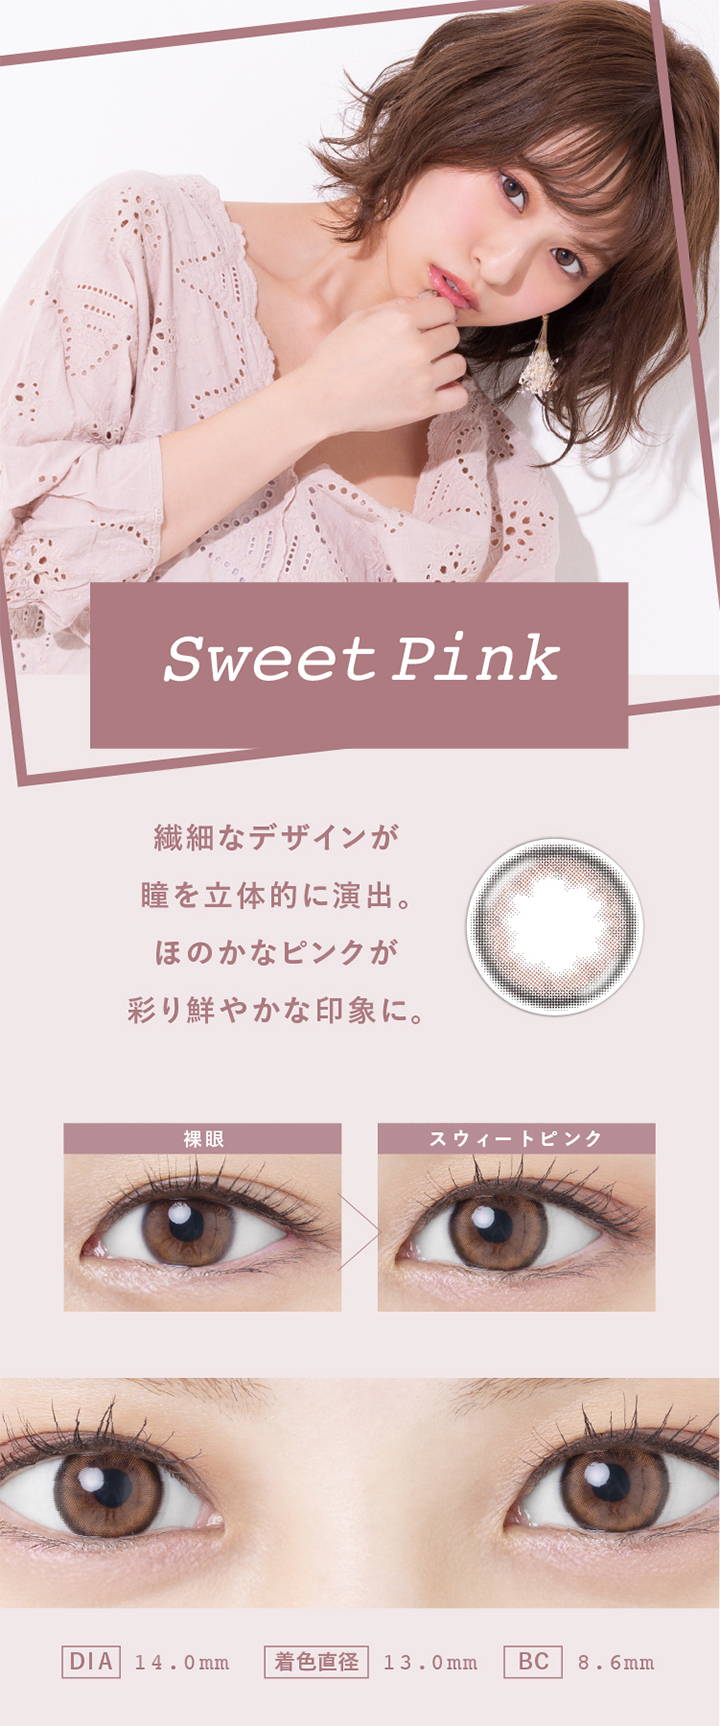 Sweet Pink(スウィートピンク),繊細なデザインが瞳を立体的に演出。ほのかなピンクが彩り鮮やかな印象に,裸眼とスウィートピンクの装用写真の比較,DIA14.0mm,着色直径13.0mm,BC8.6mm|スウィートハート(SweetHeart)コンタクトレンズ